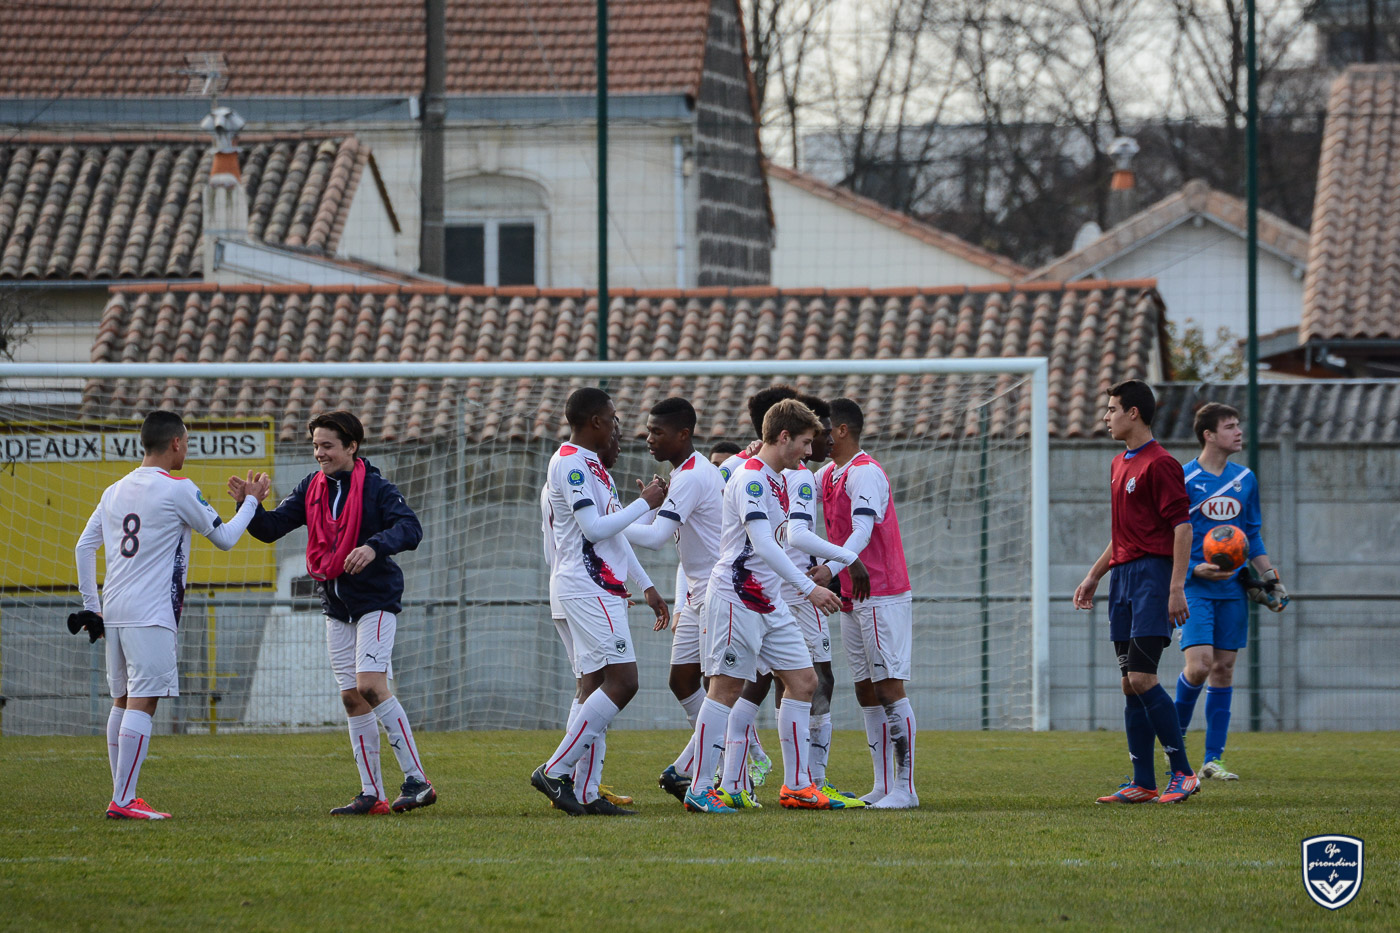 U17 Nationaux : Vainqueurs 7-1 contre Poitiers et champions de la poule !